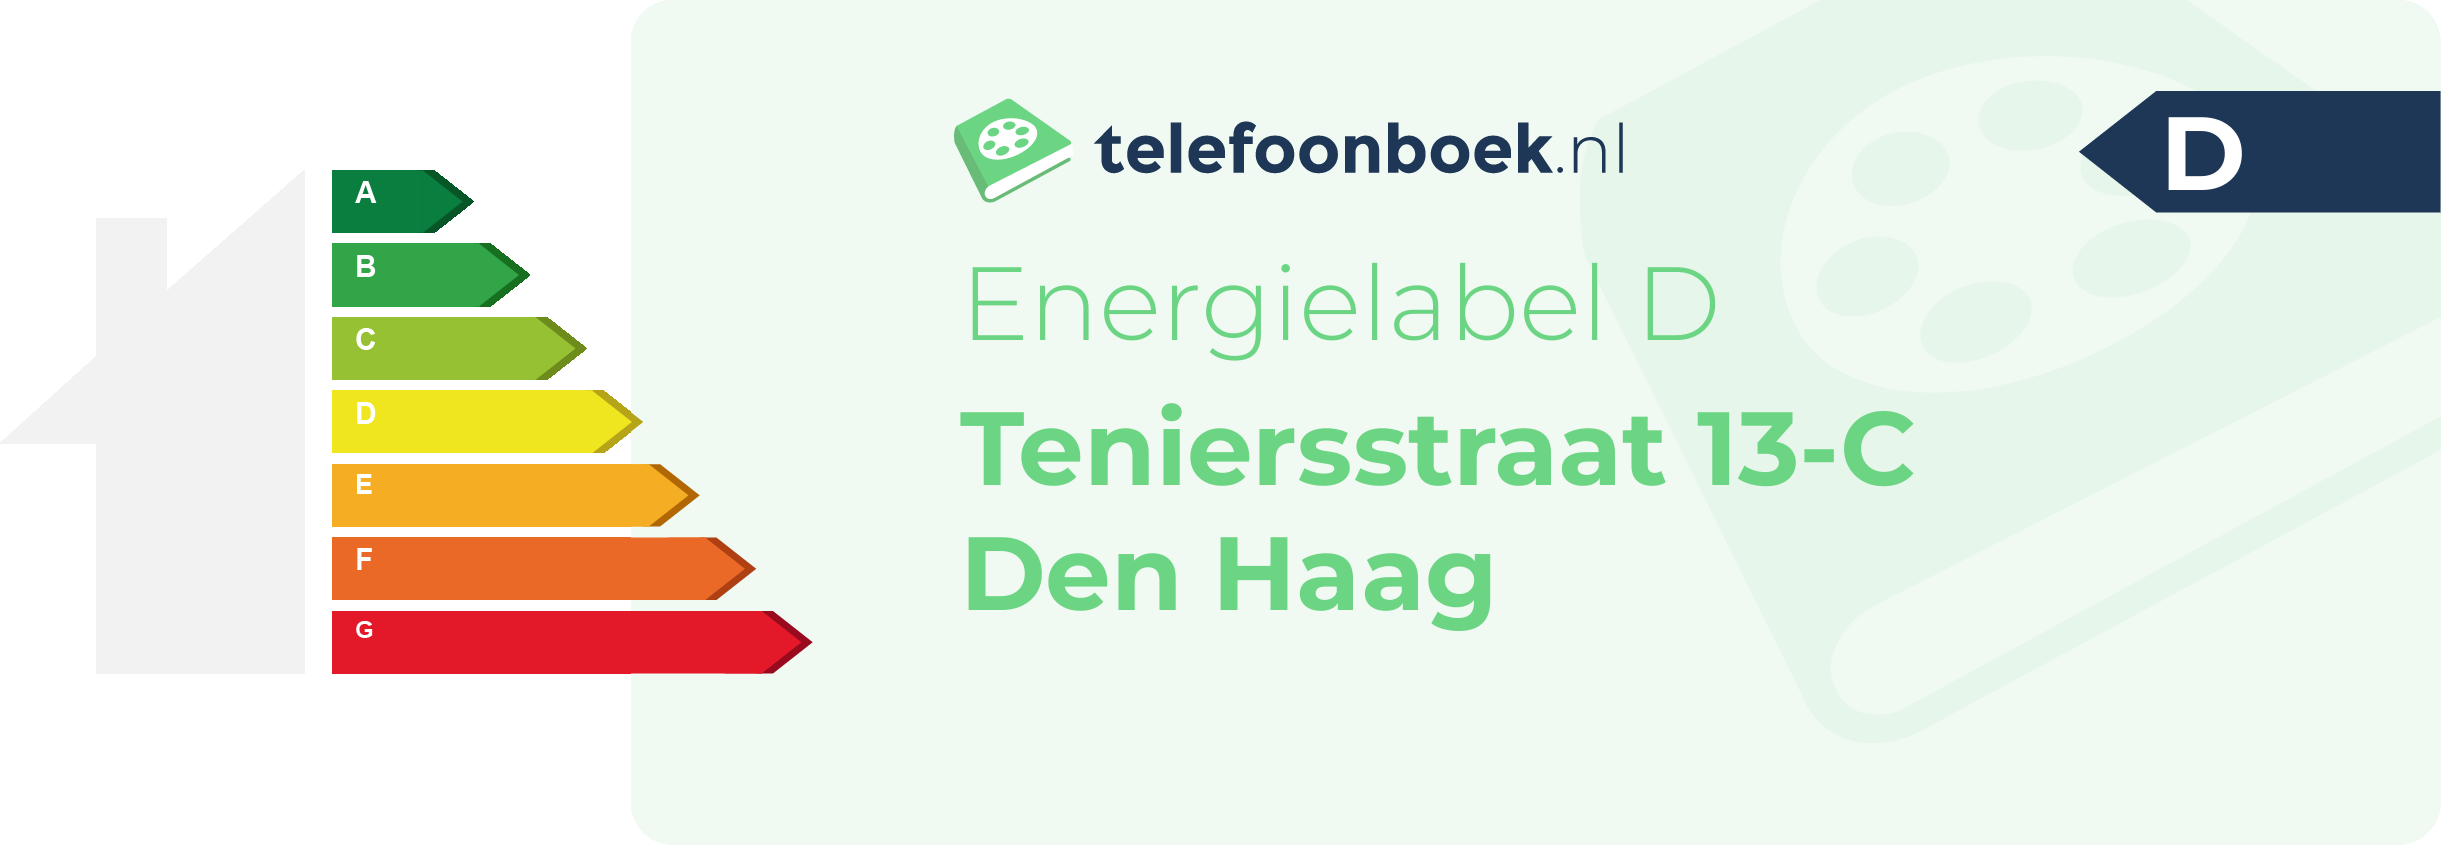 Energielabel Teniersstraat 13-C Den Haag